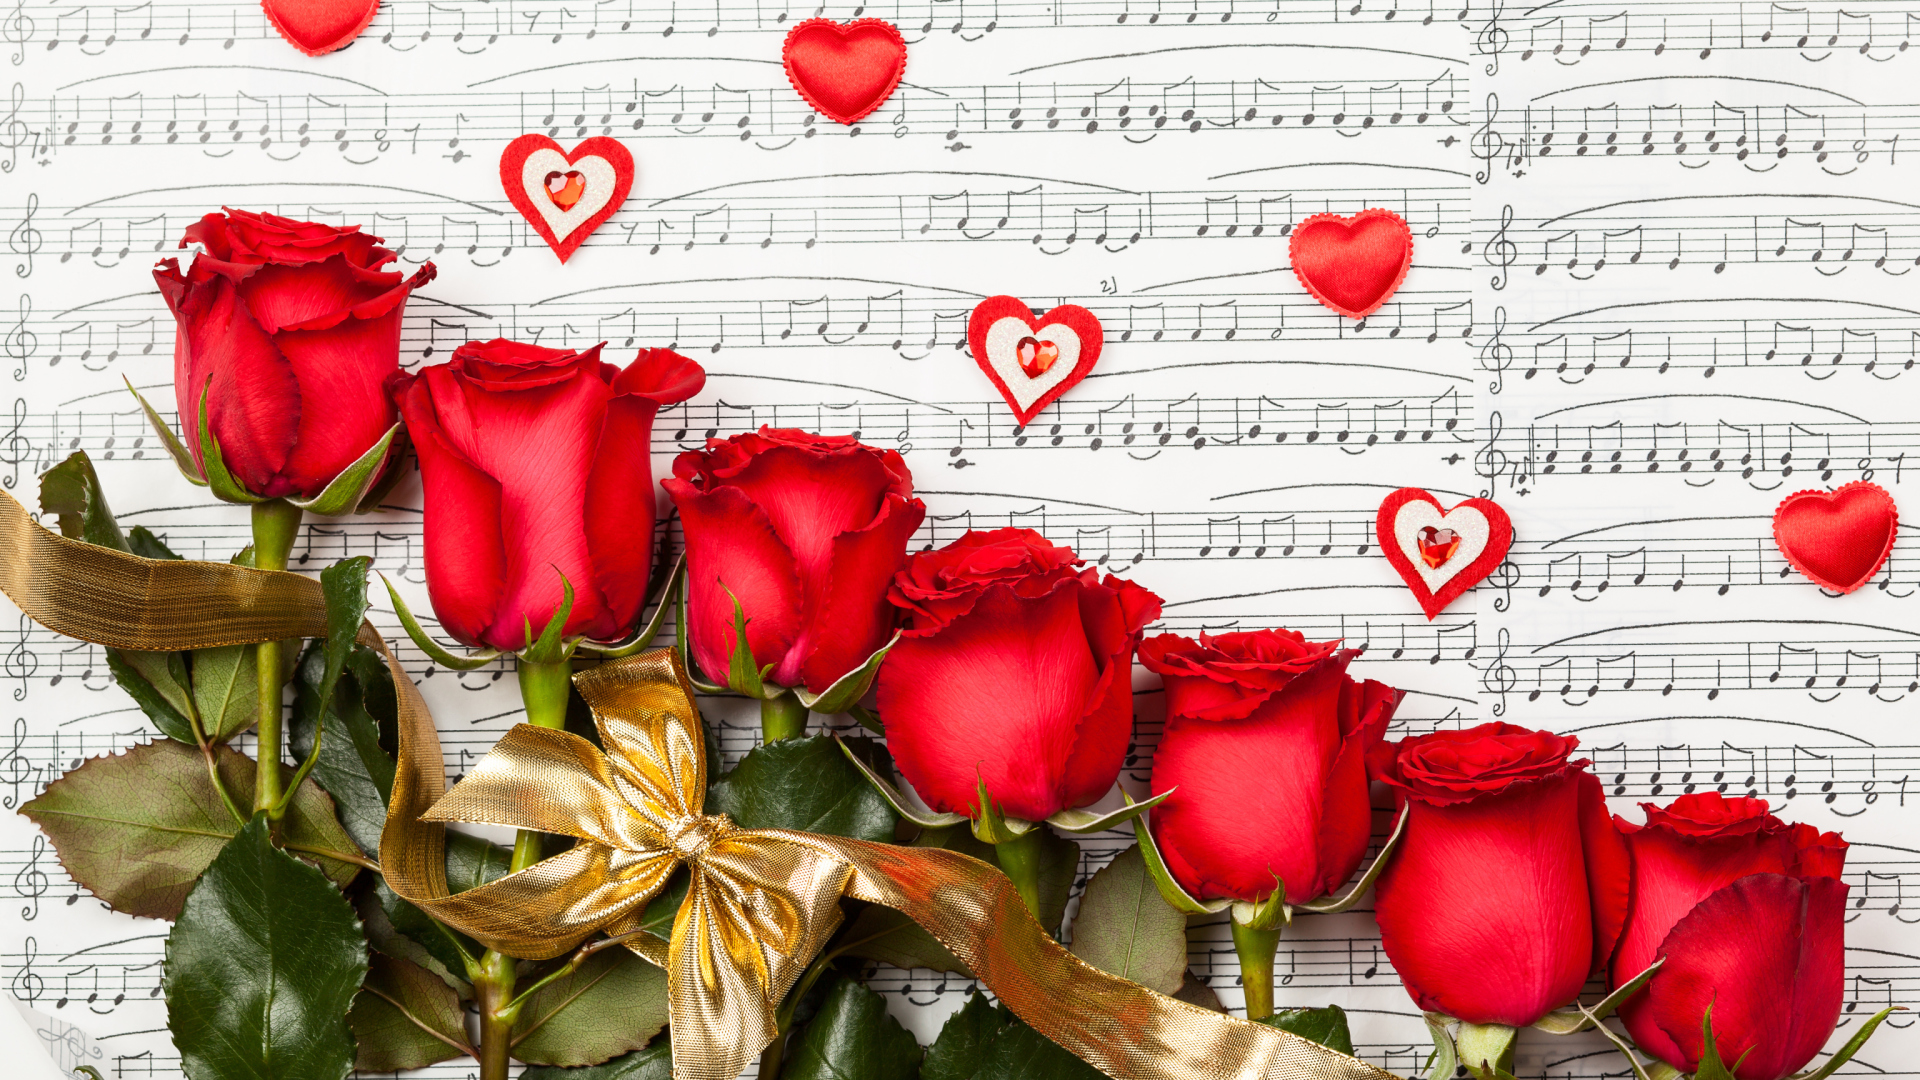 Обои Roses, Love And Music 1920x1080